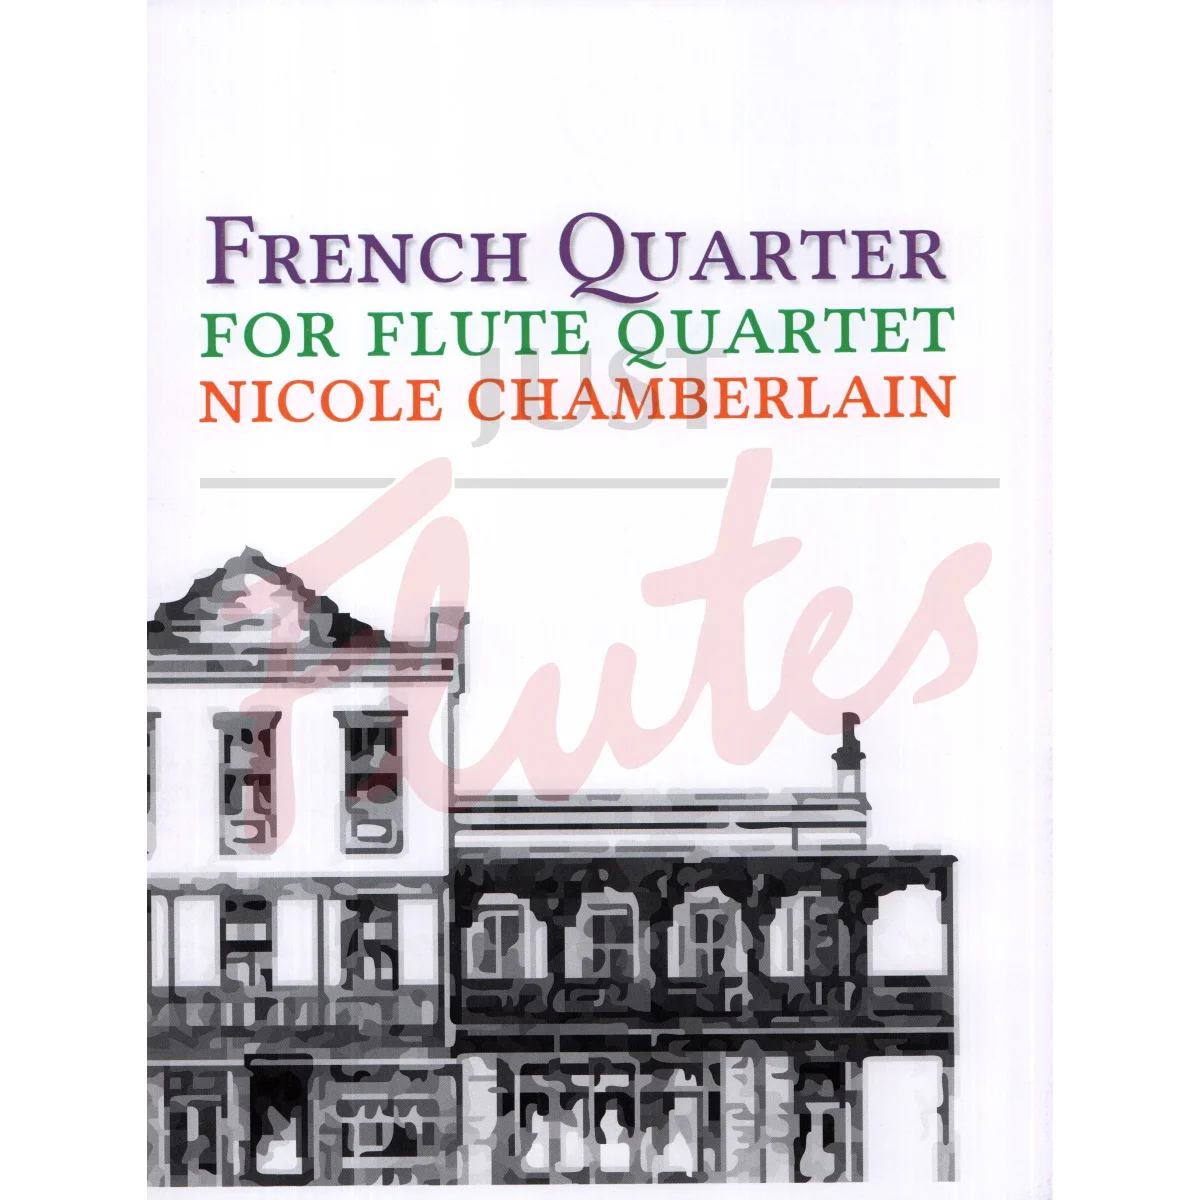 French Quarter for Flute Quartet